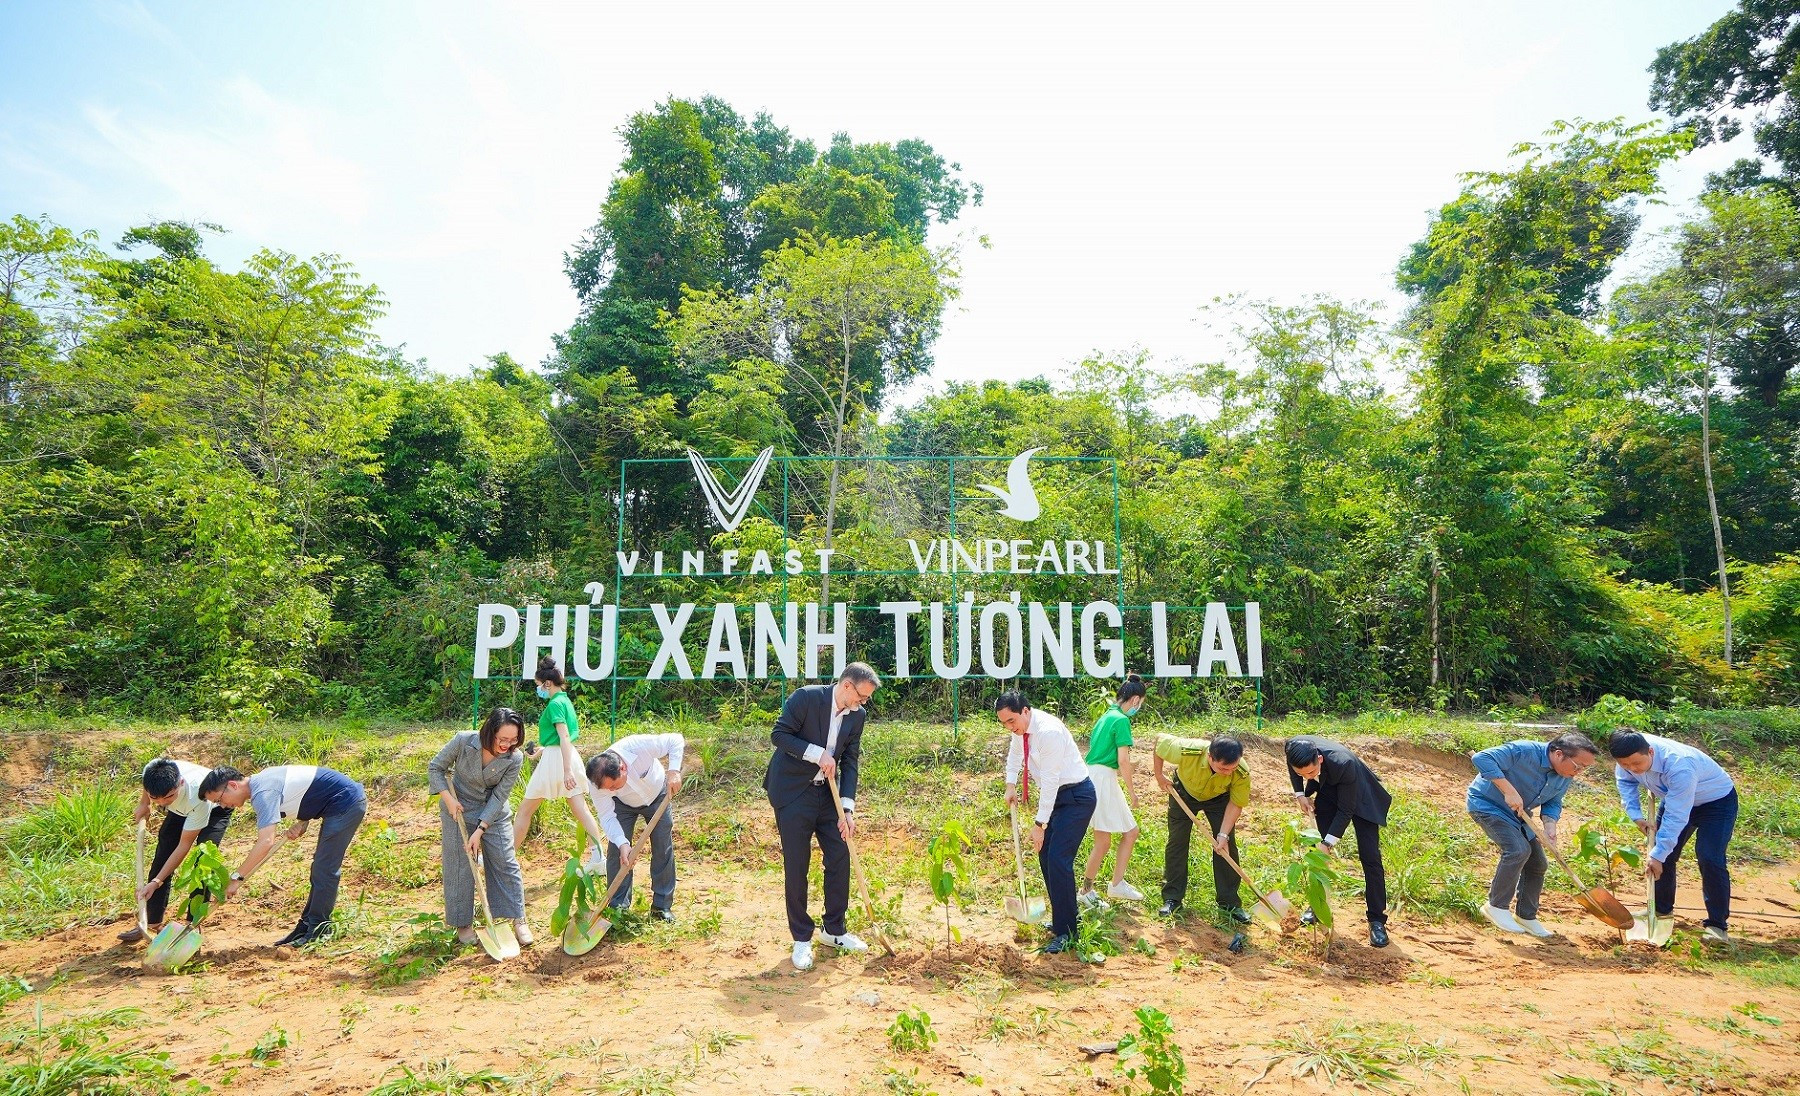 Vinfast khởi động dự án trồng rừng “phủ xanh tương lai”